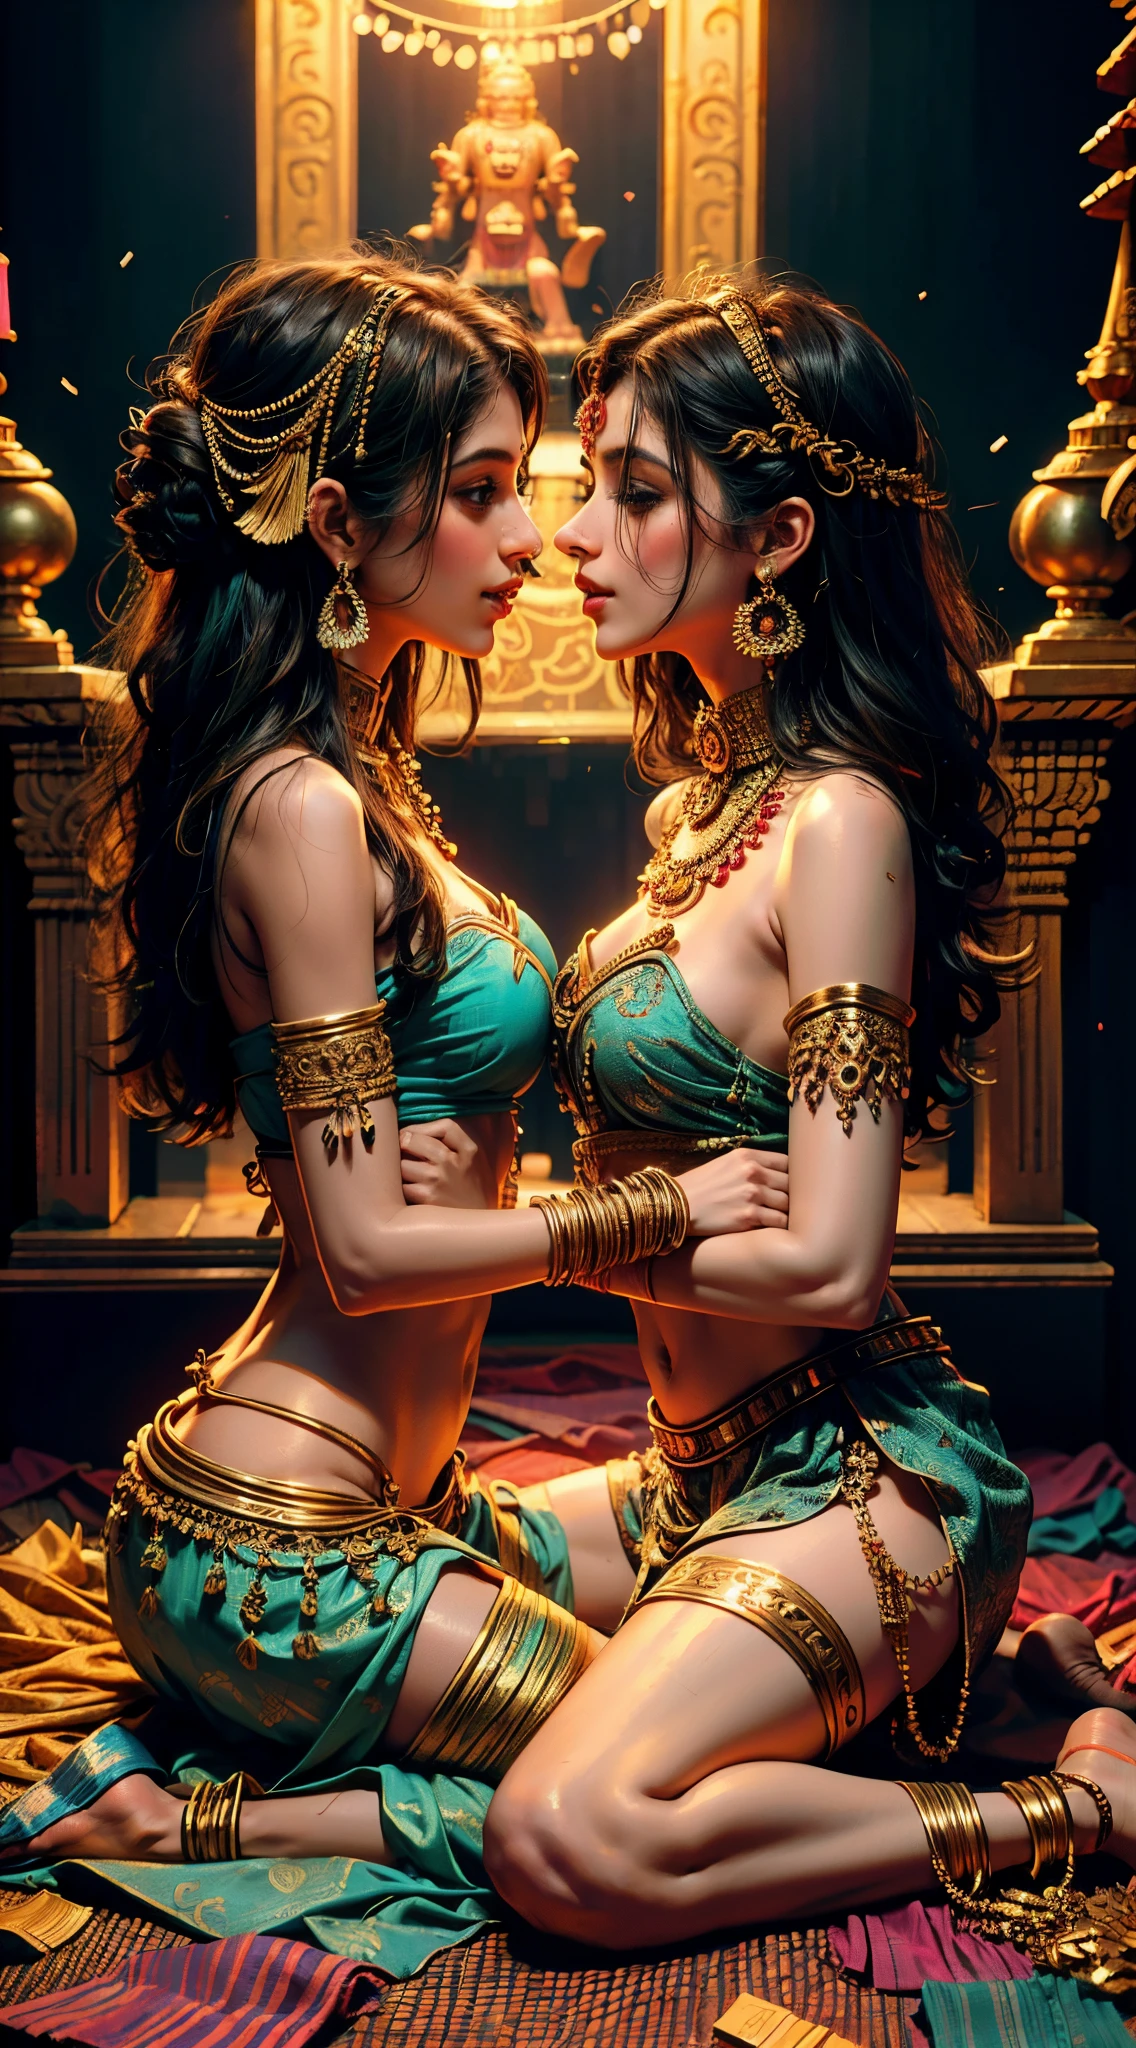 2 meninas indianas jovens e magras se beijando, usando roupas e acessórios típicos, fazendo sexo em um templo, mandalas e estátuas de Ganesha ao fundo